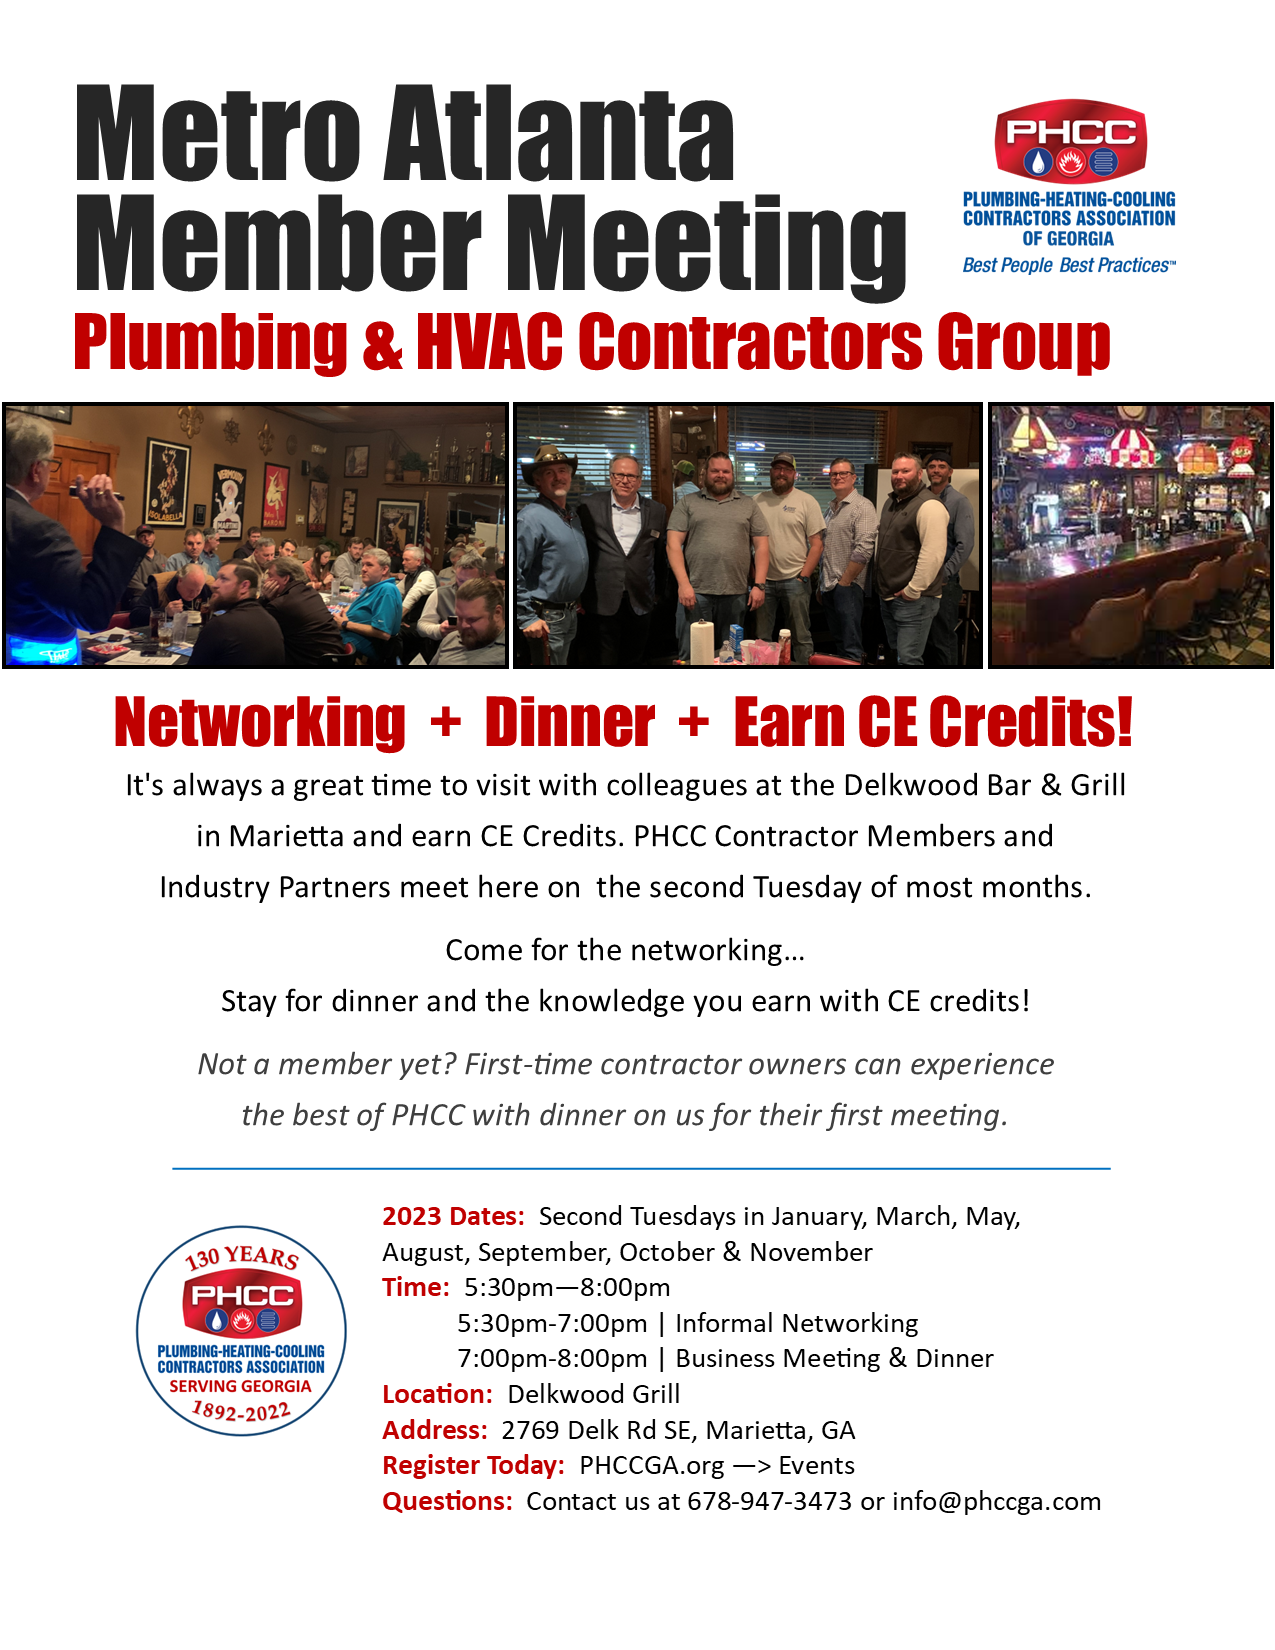 PHCC of Georgia Metro Atlanta Member Meetings